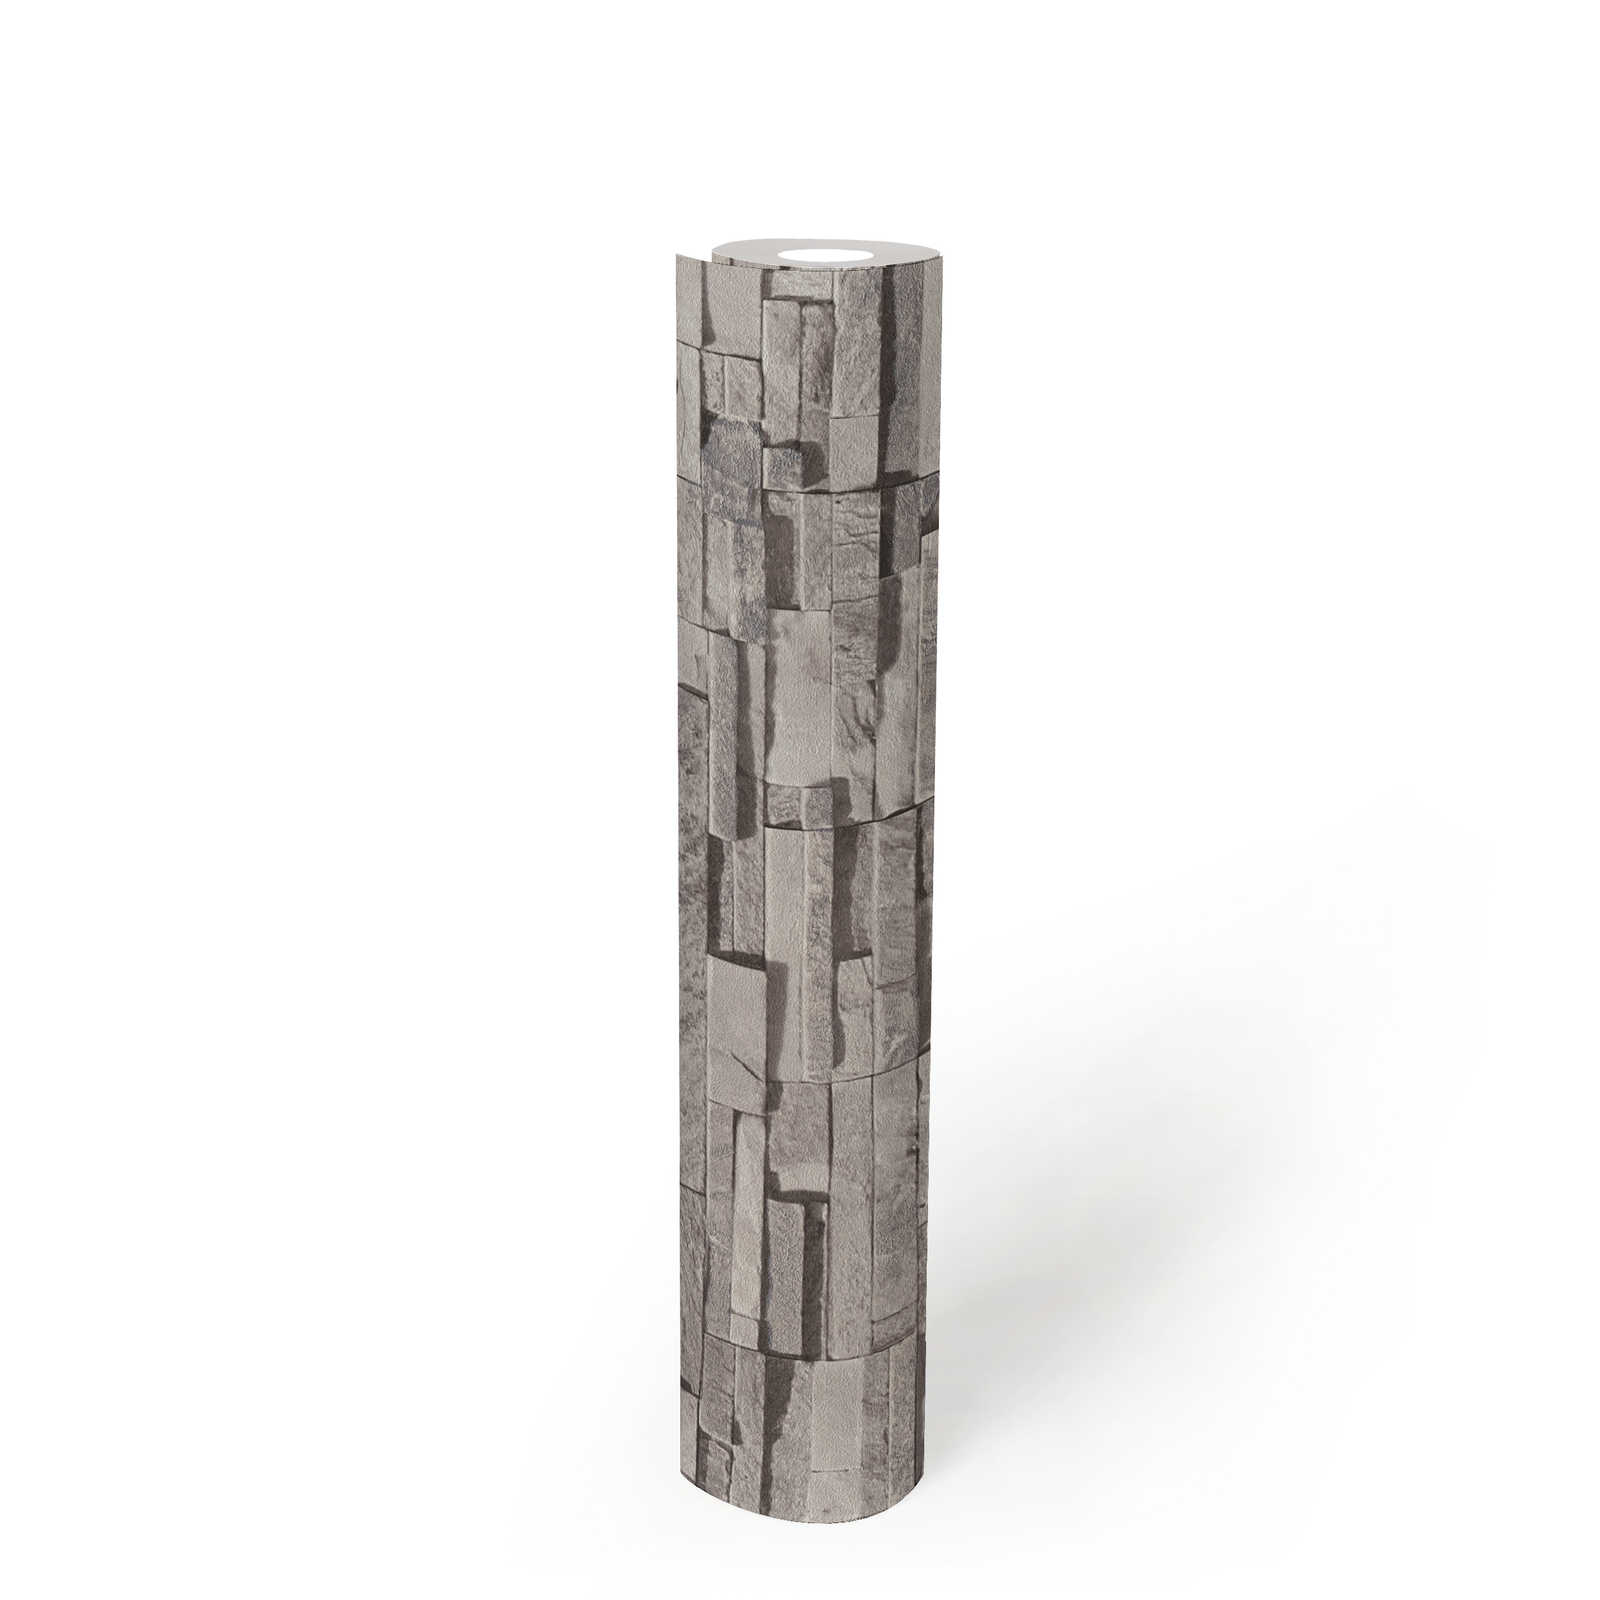             Steinoptik Vliestapete mit glänzenden Muster – Hellgrau, Beige, Silber
        